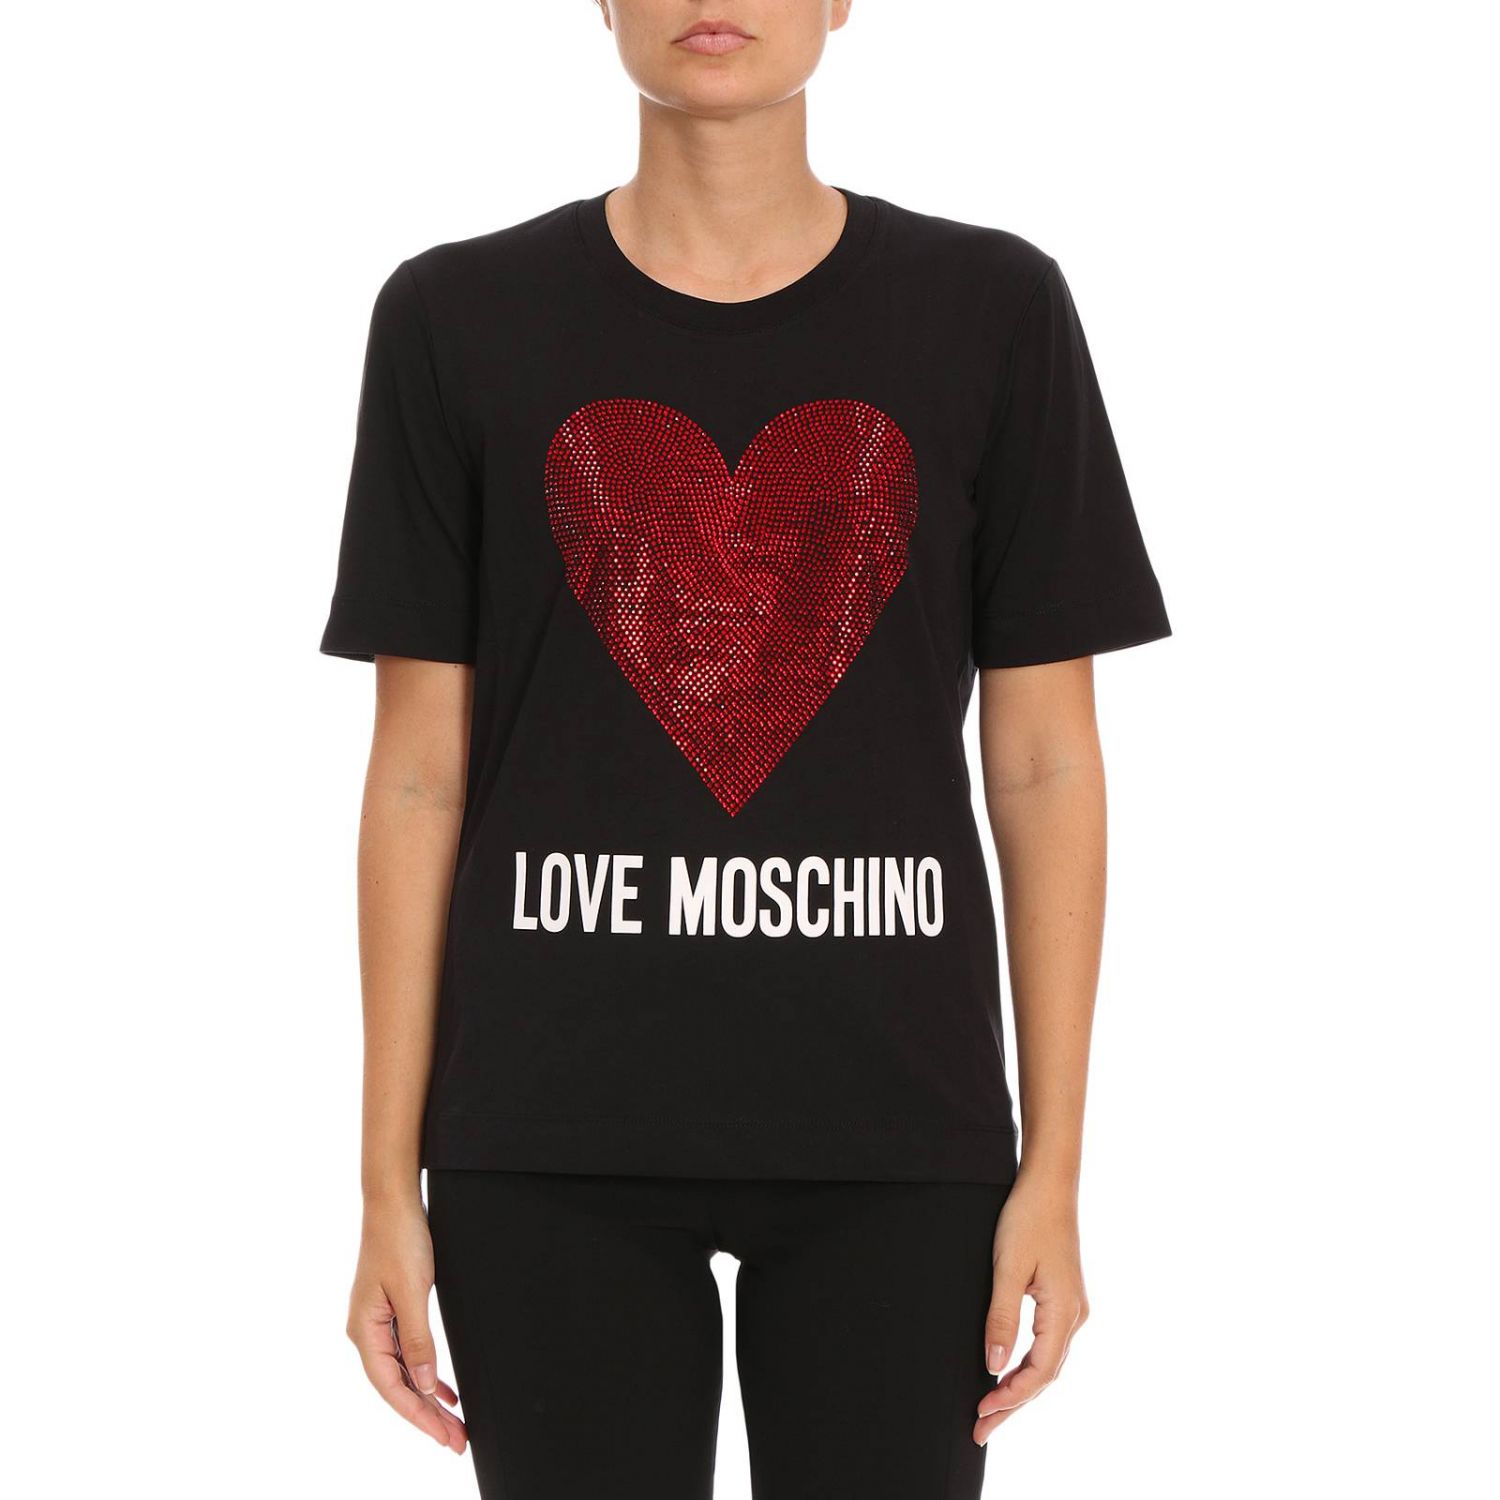 Love Moschino Outlet: T-shirt women 